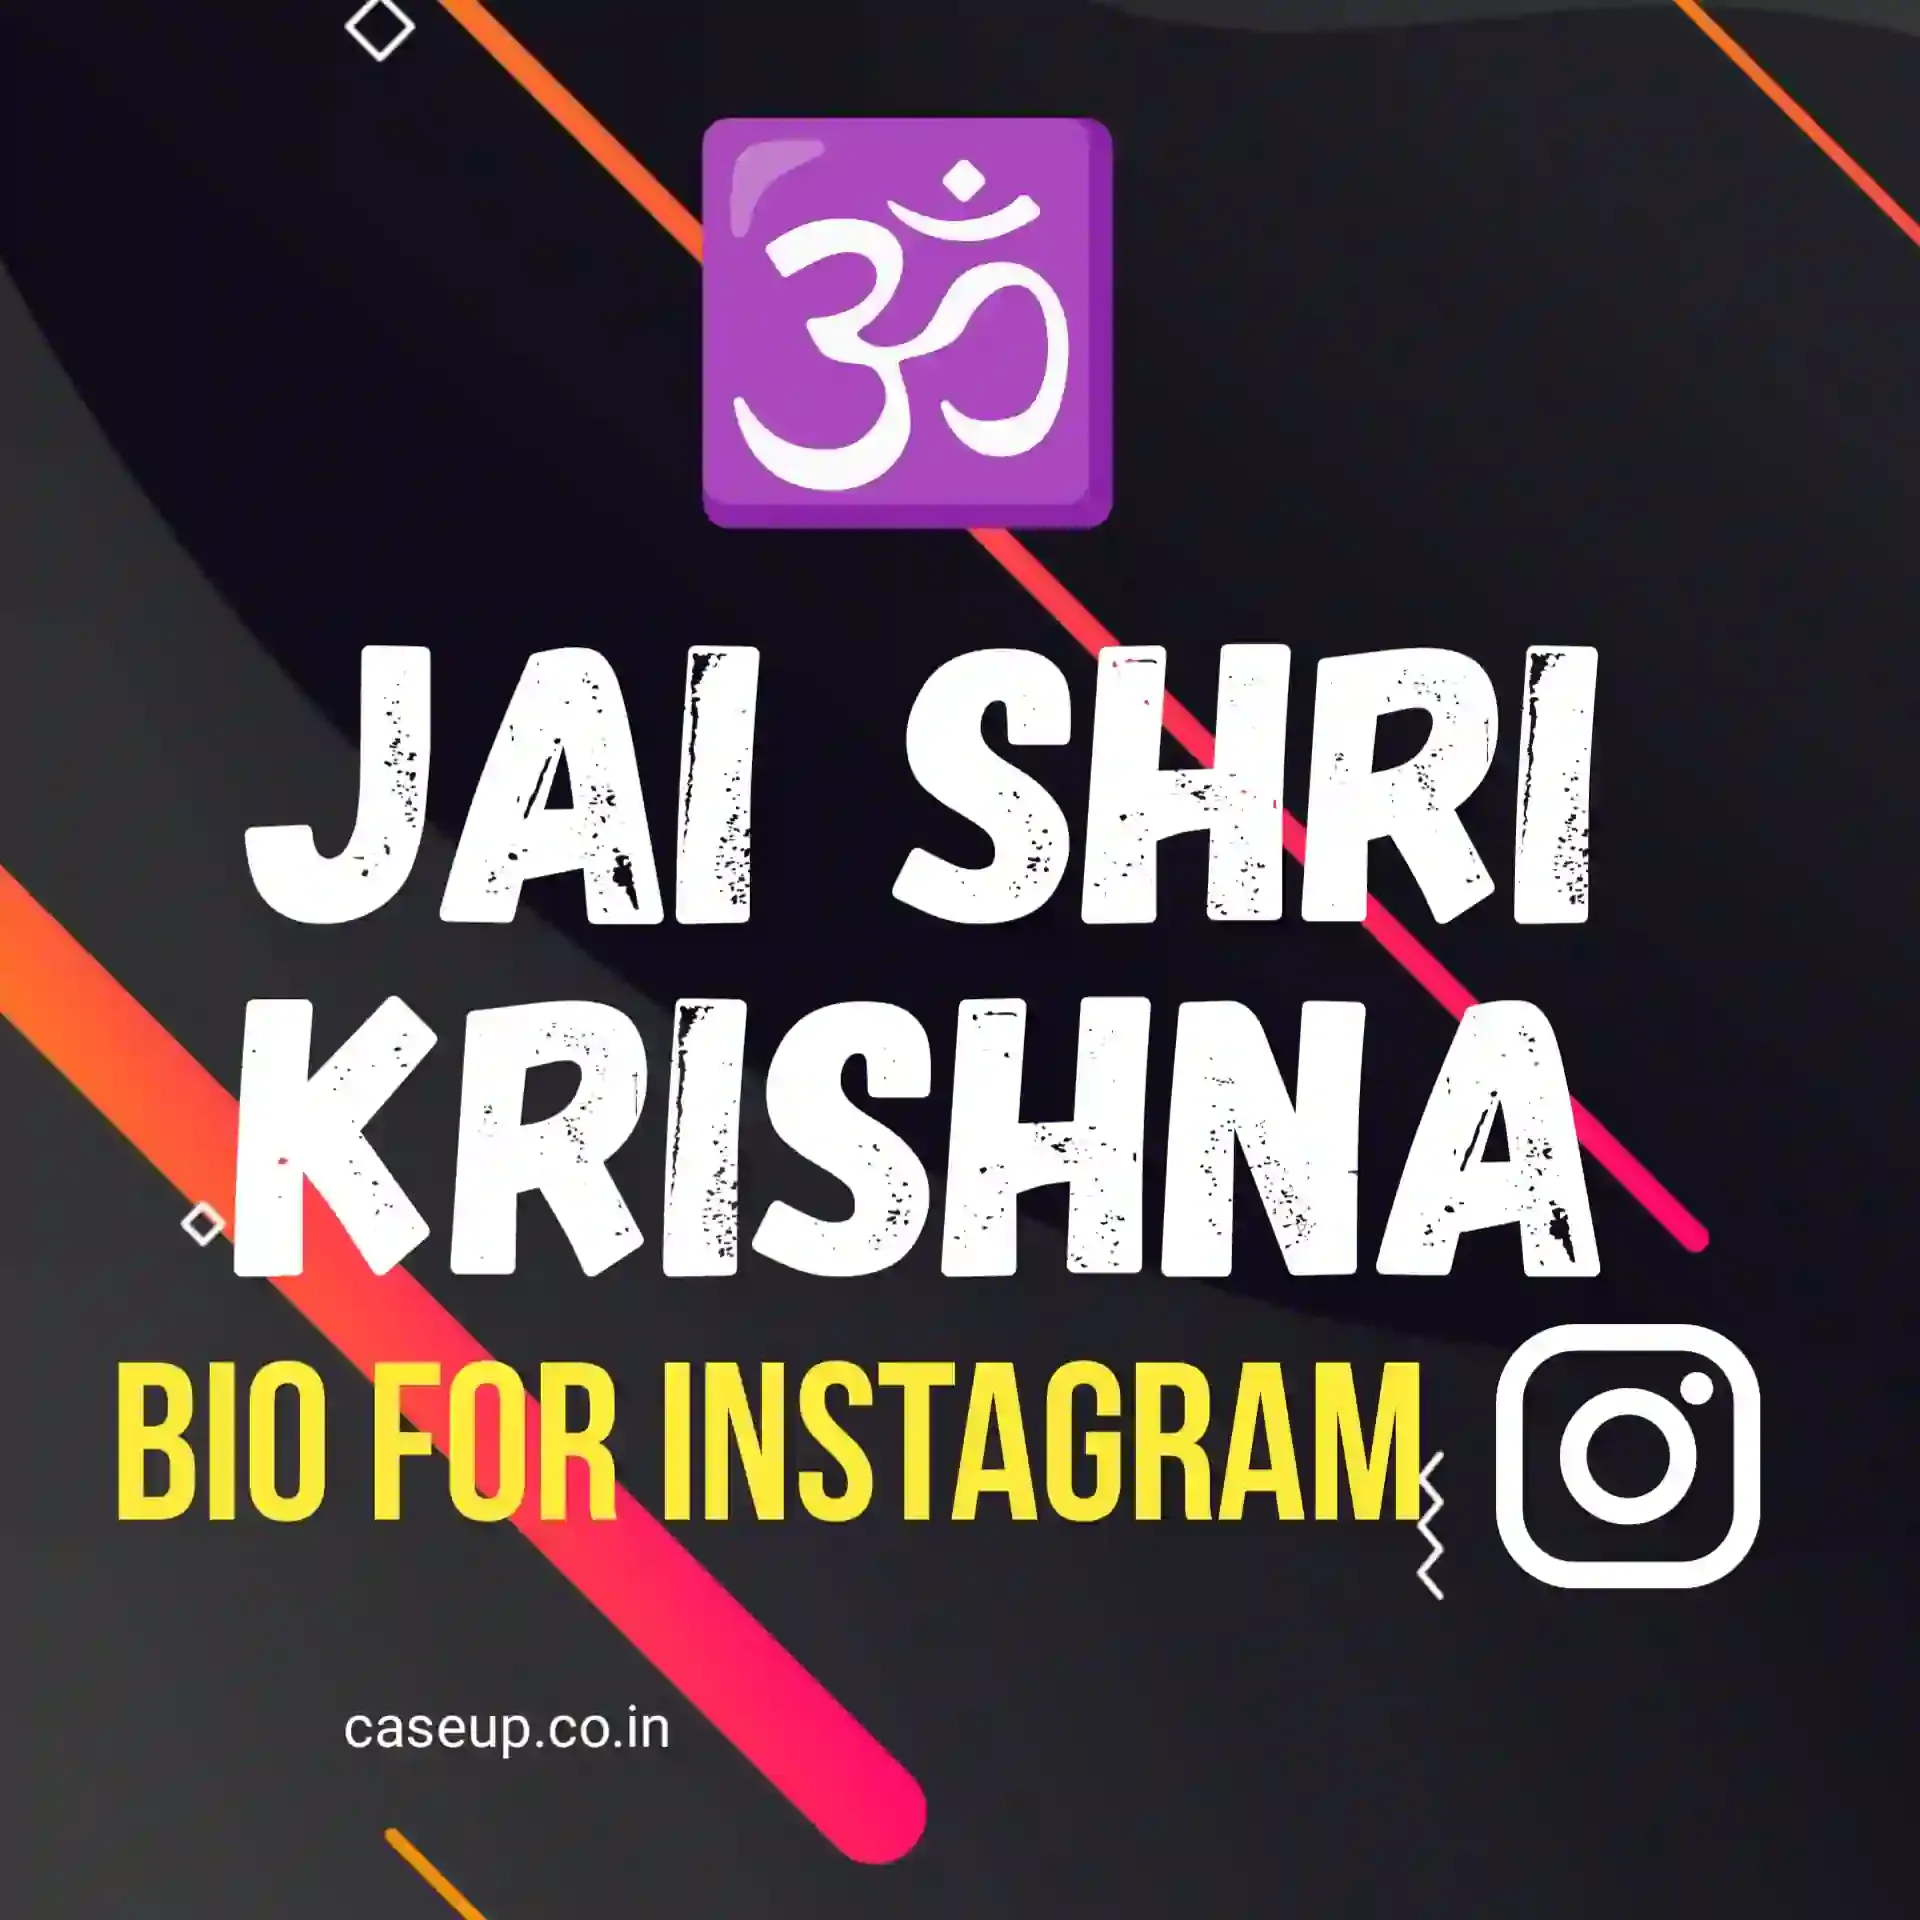 krishna bio for instagram image